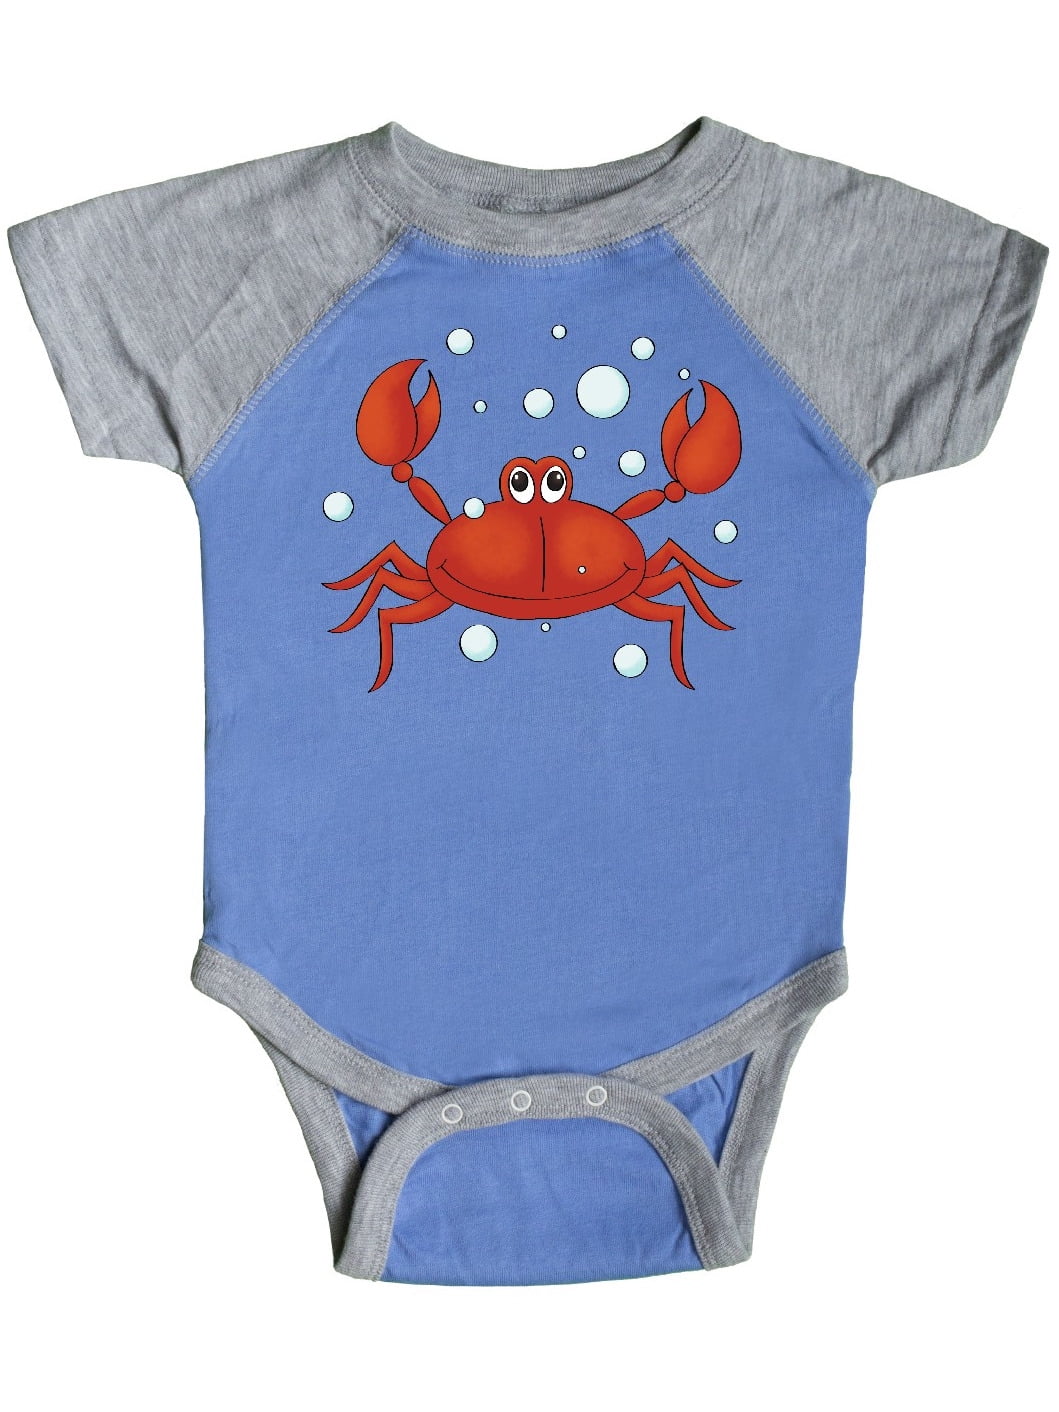 INKtastic - Gideon's Crab Infant Creeper - Walmart.com - Walmart.com